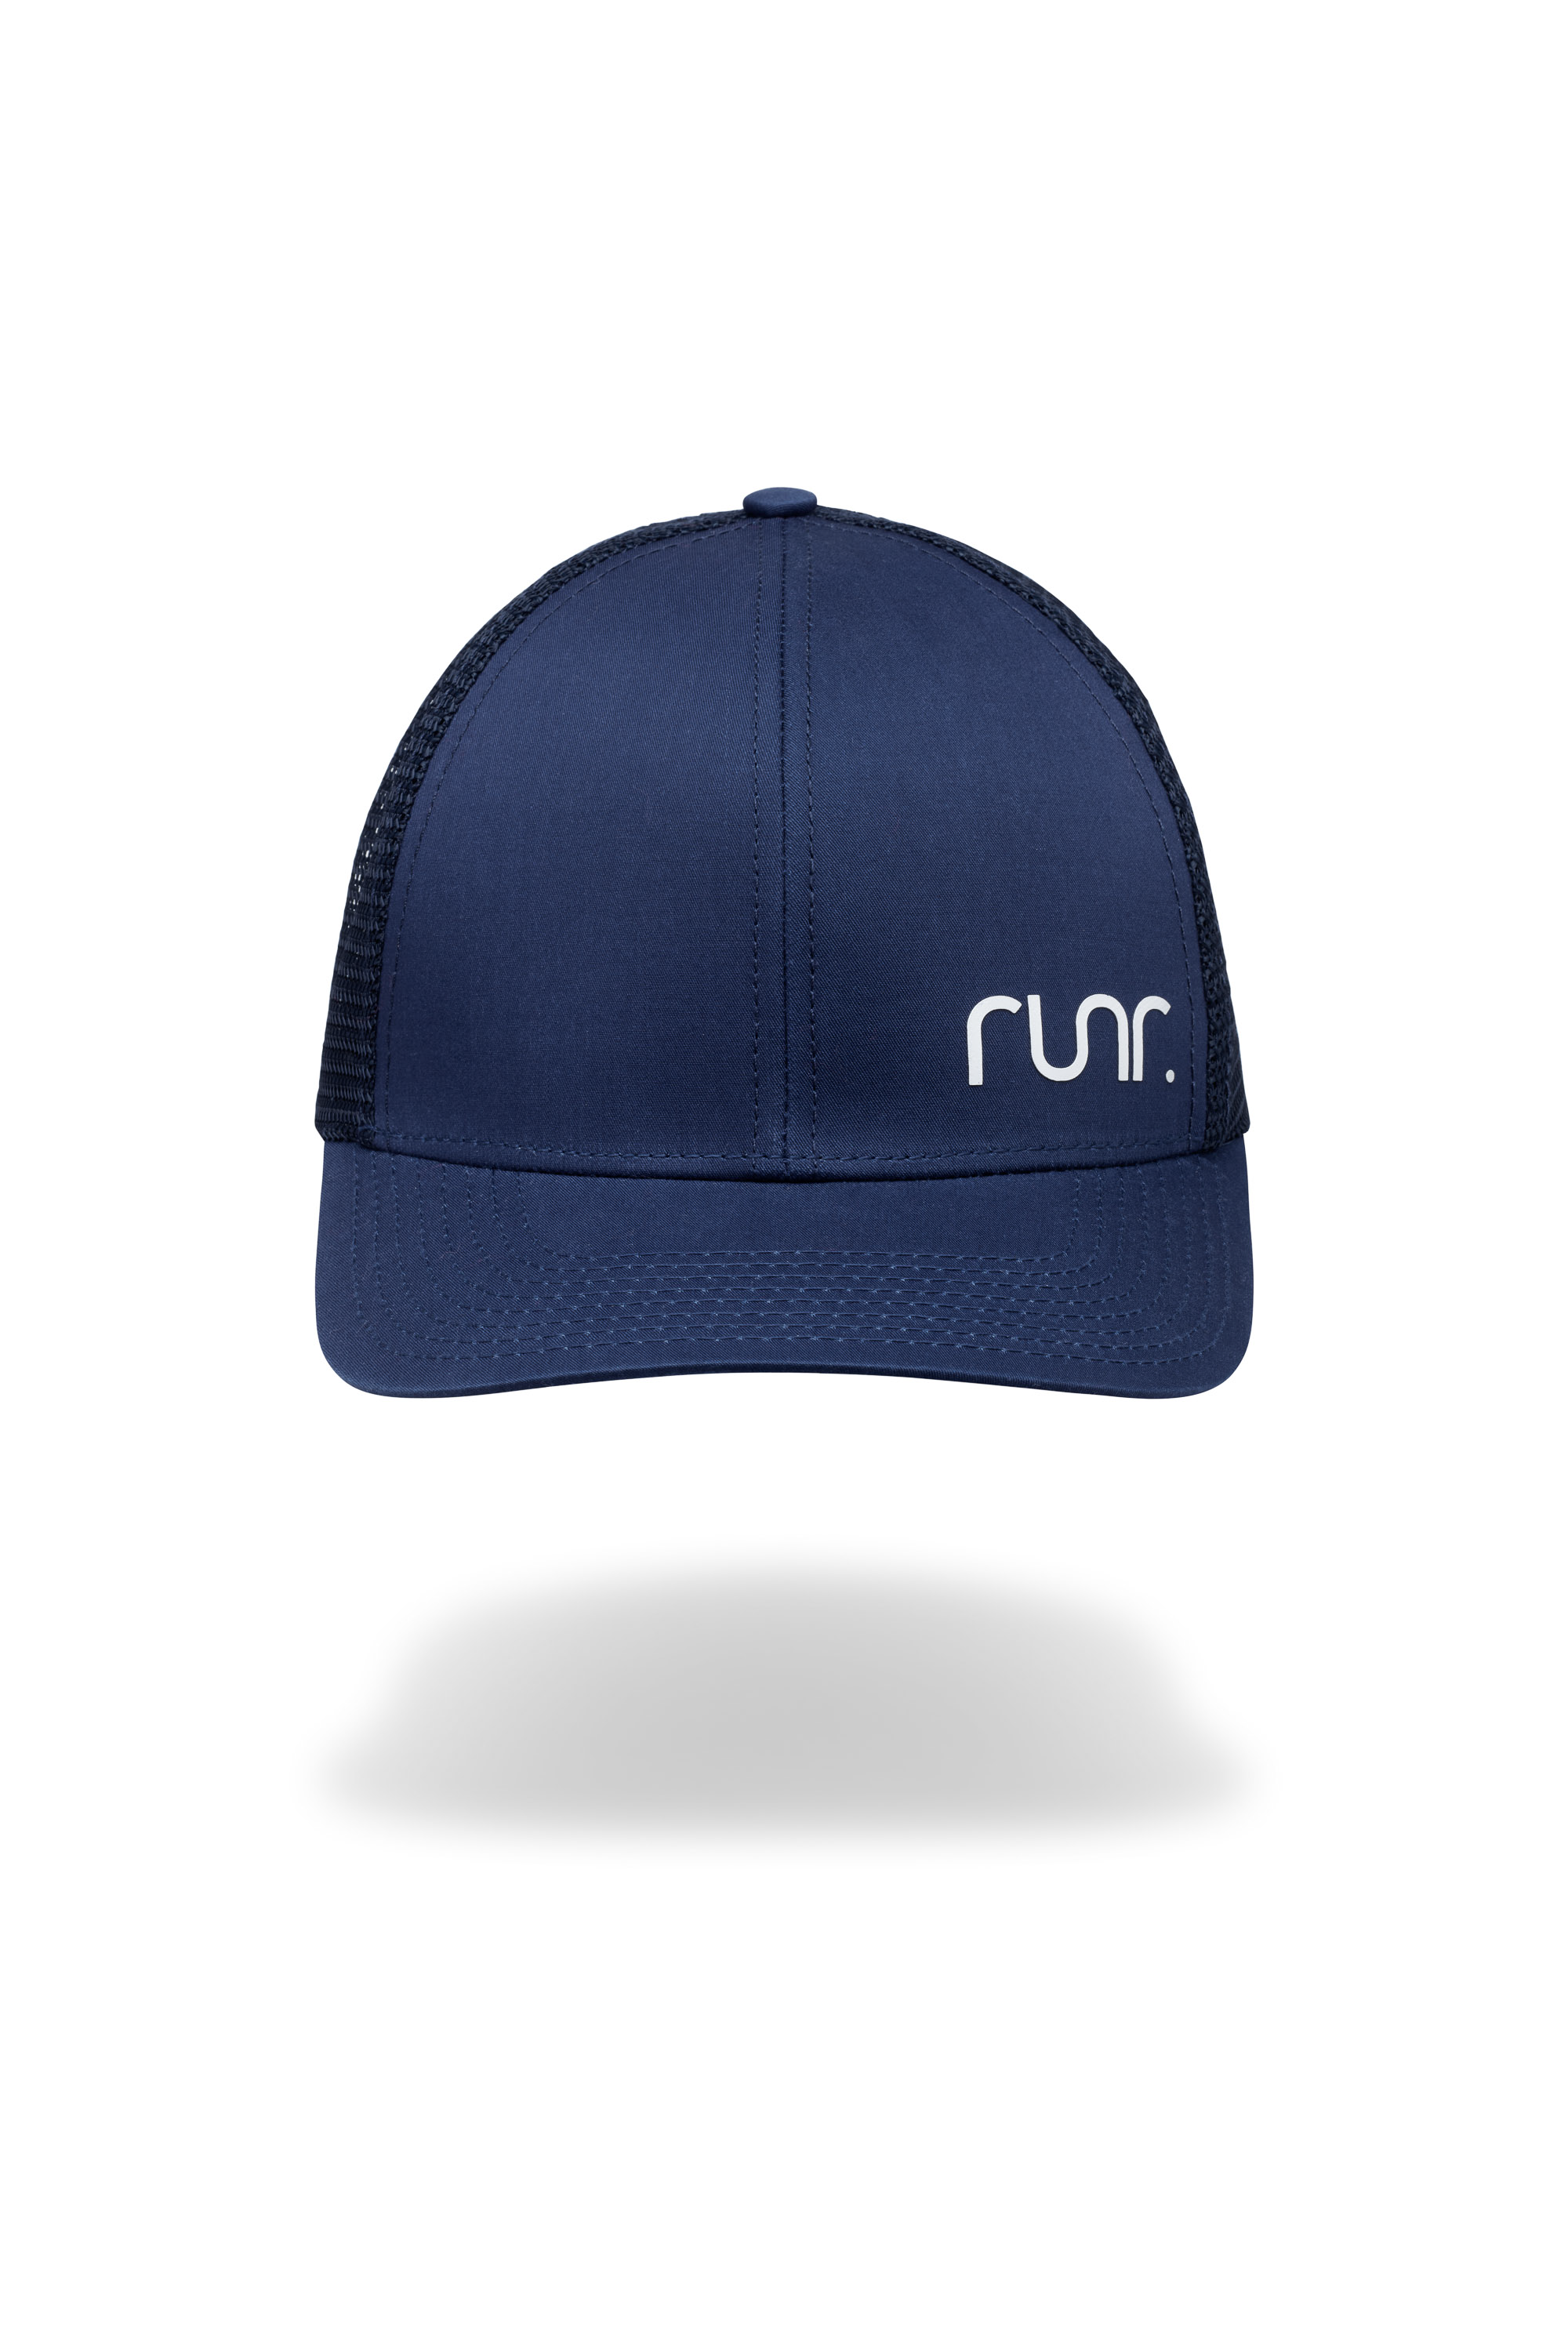 Runr Navy Retro Trucker Hat